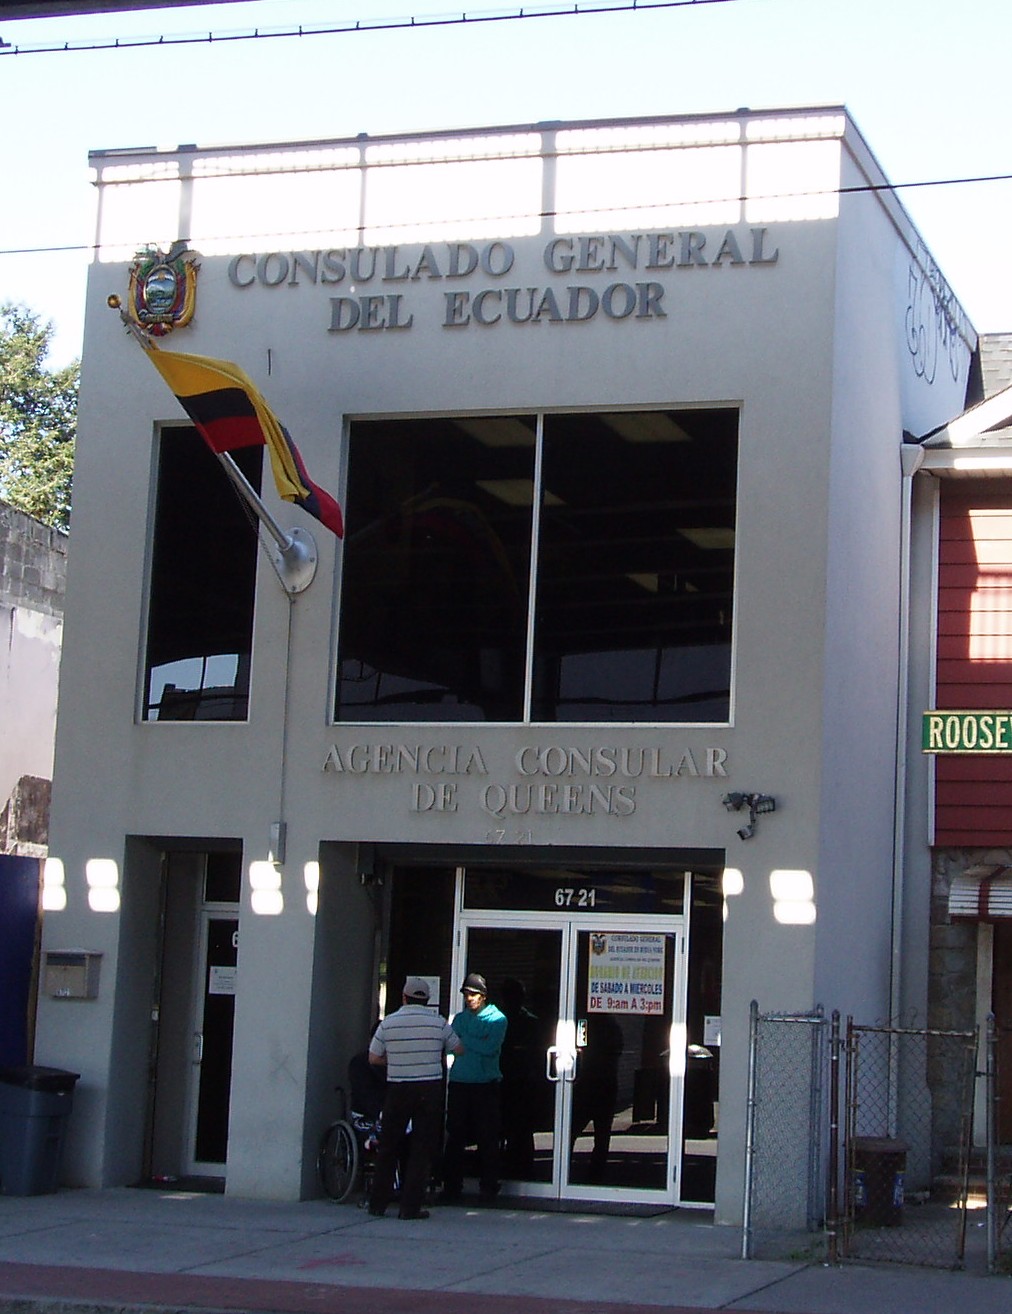 Consulado de ecuador en colombia